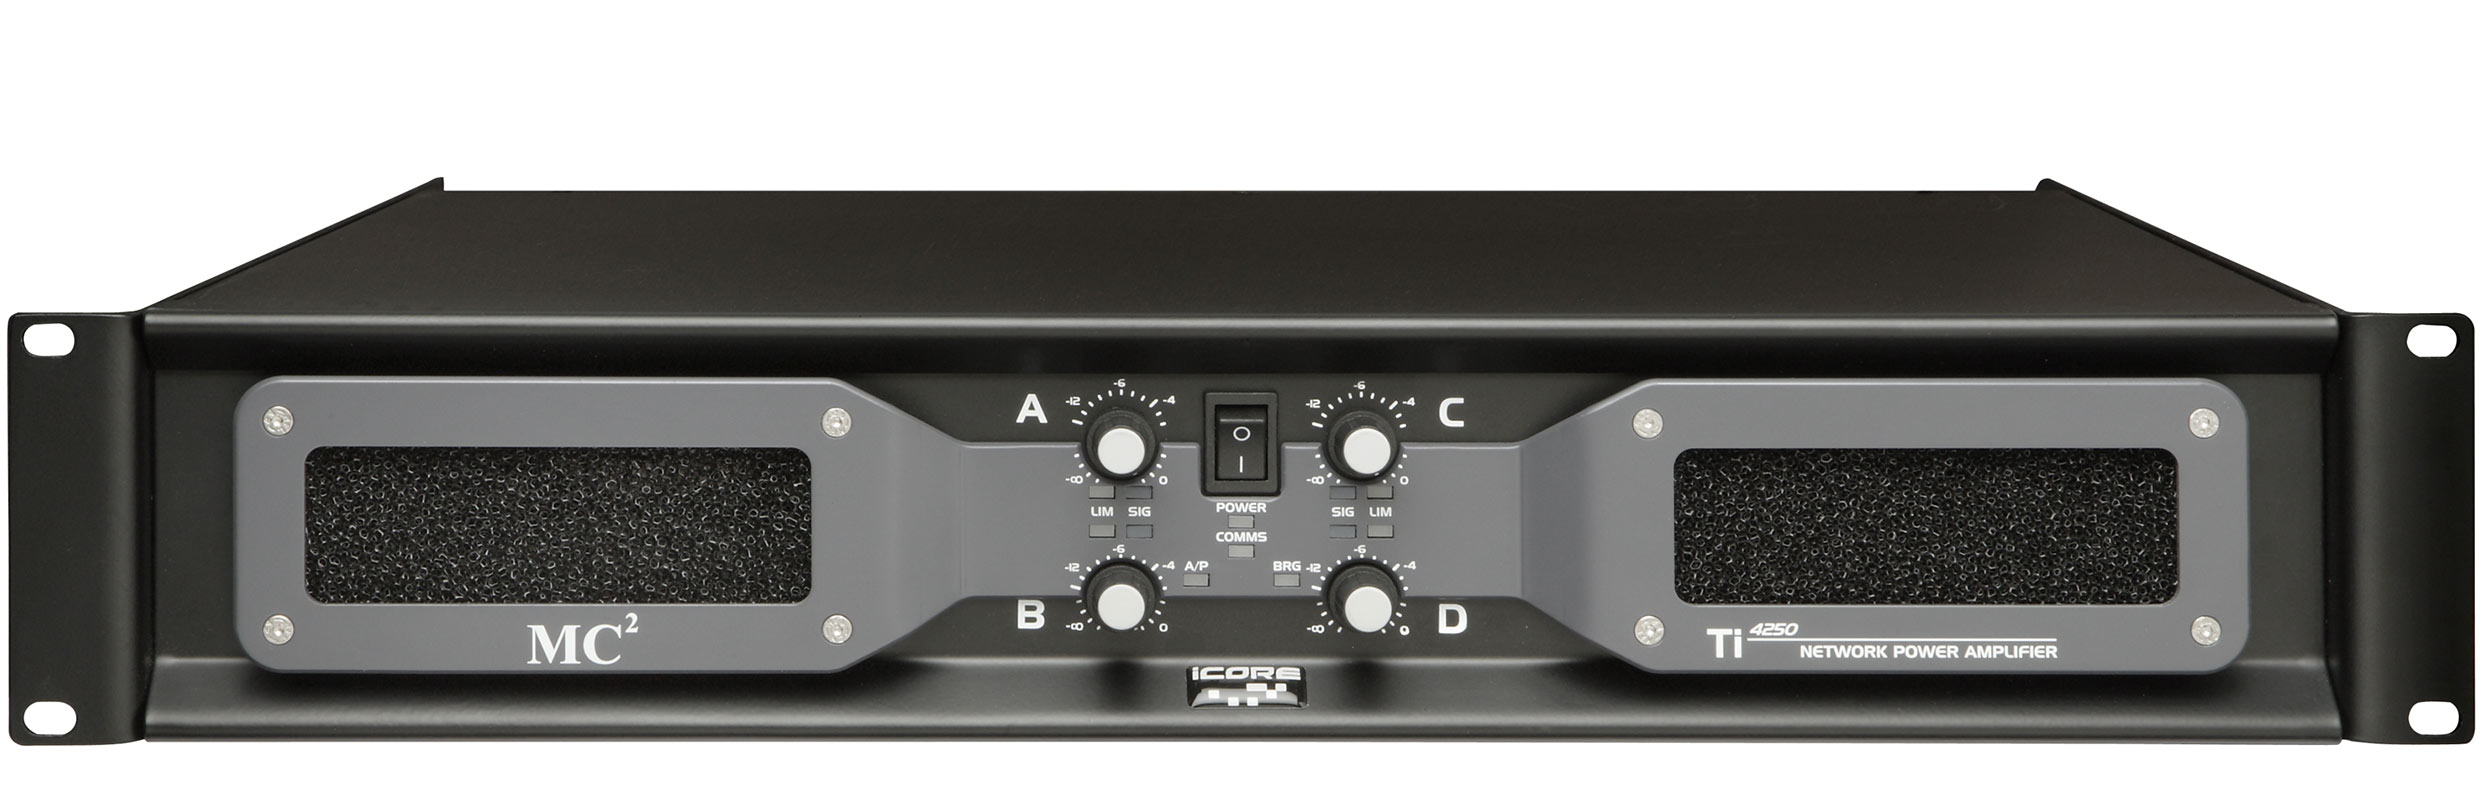 Ti-Series Amplifiers